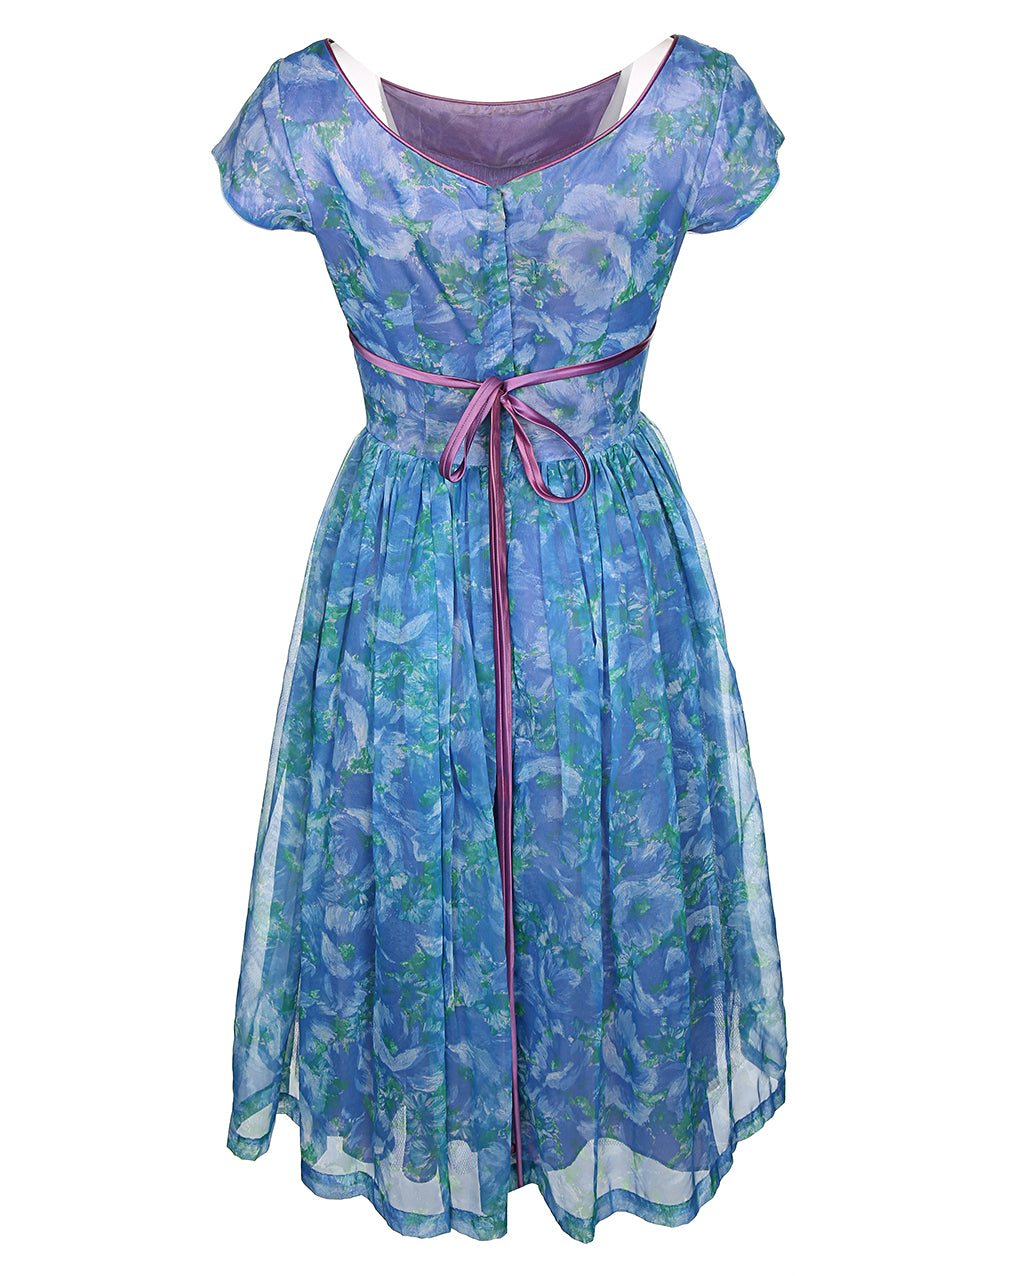 Vintage 50's Blue Midi Dress - S